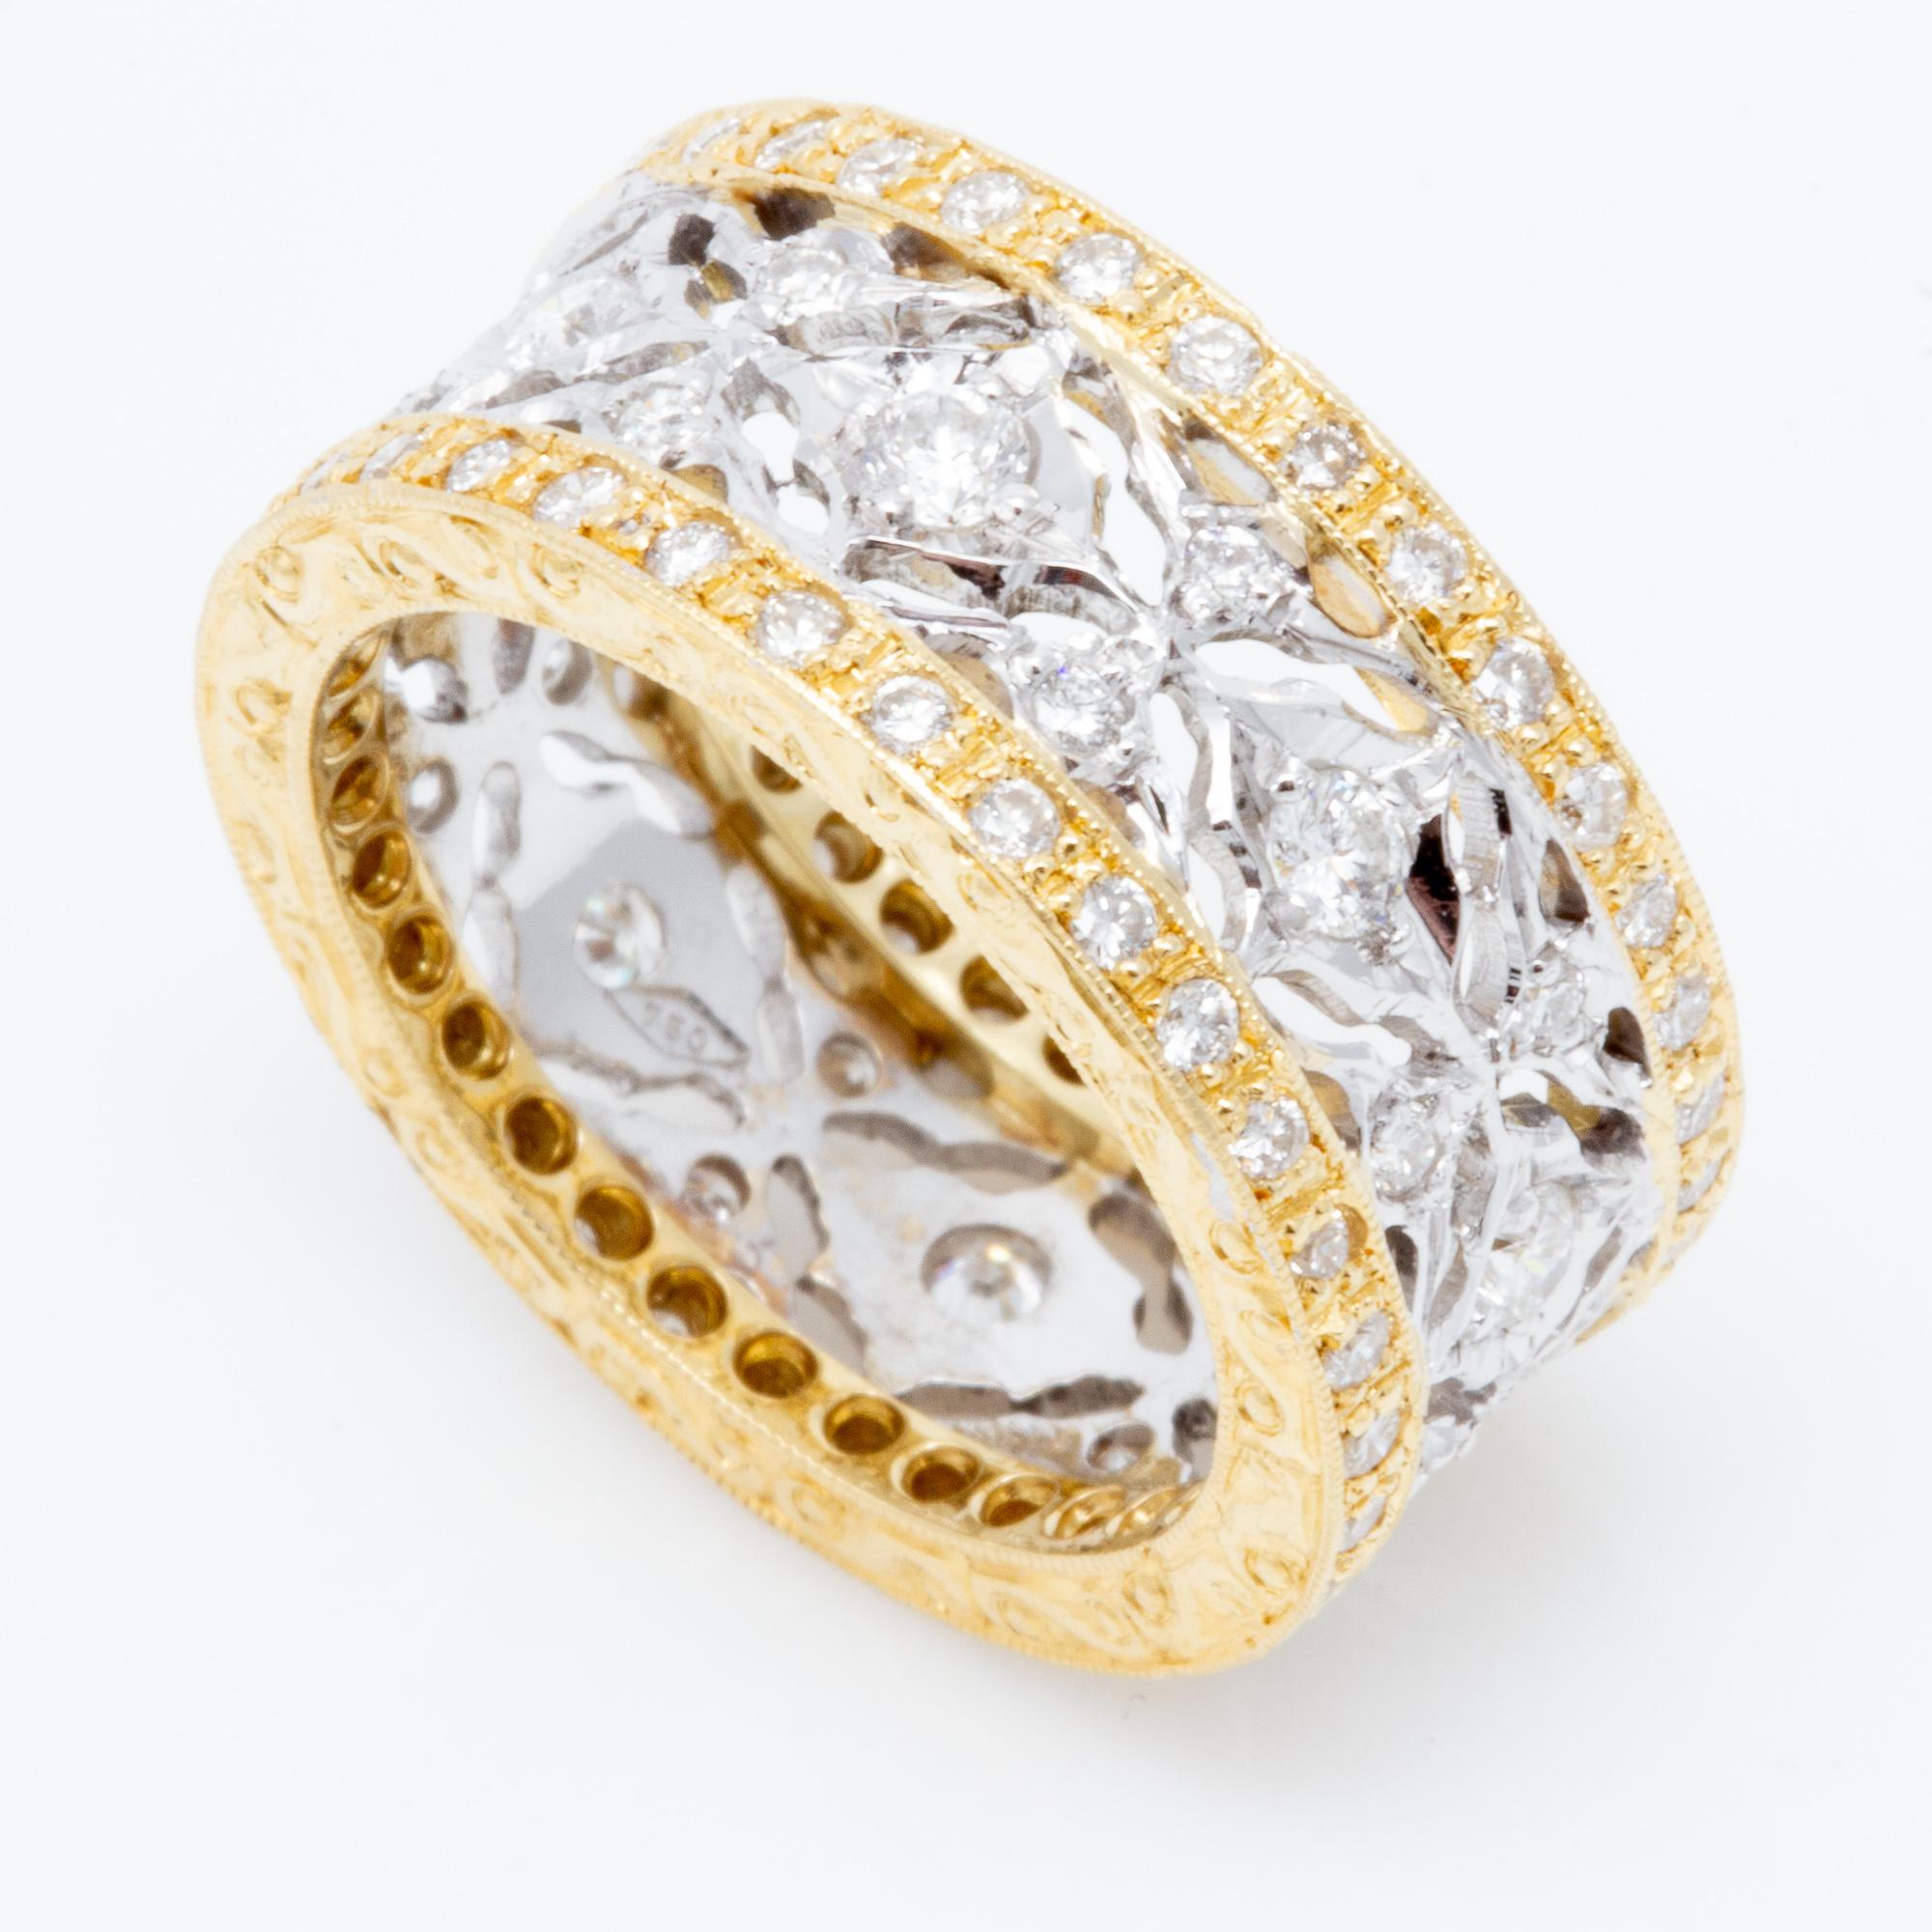 Dieser handgefertigte italienische zweifarbige Ring mit 1,22 Karat Diamanten und 18 Karat ist ein wunderschönes Schmuckstück und eine wunderbare Wahl für ein nicht-traditionelles Jubiläumsband. Gut geschliffene Diamanten sind an beiden Rändern